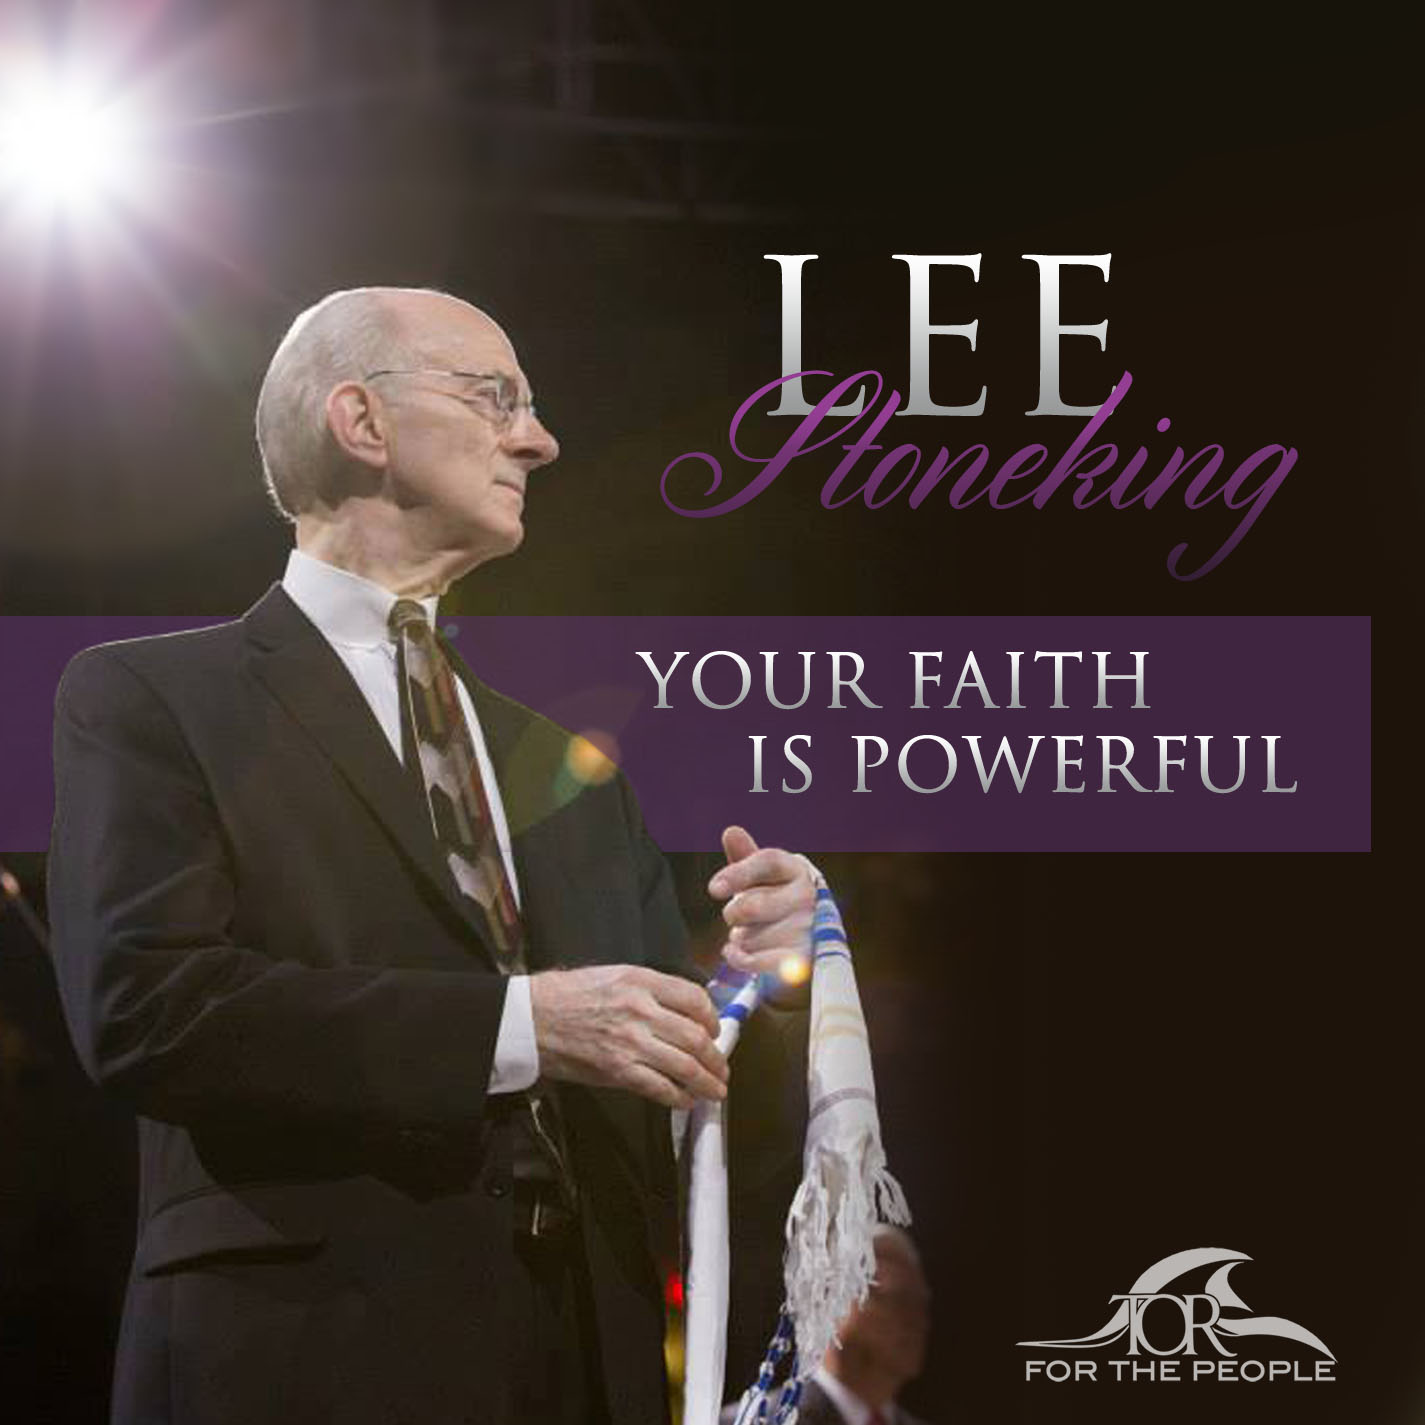 Lee Stoneking - Your Faith Is Powerful - Gordon Poe Ministries